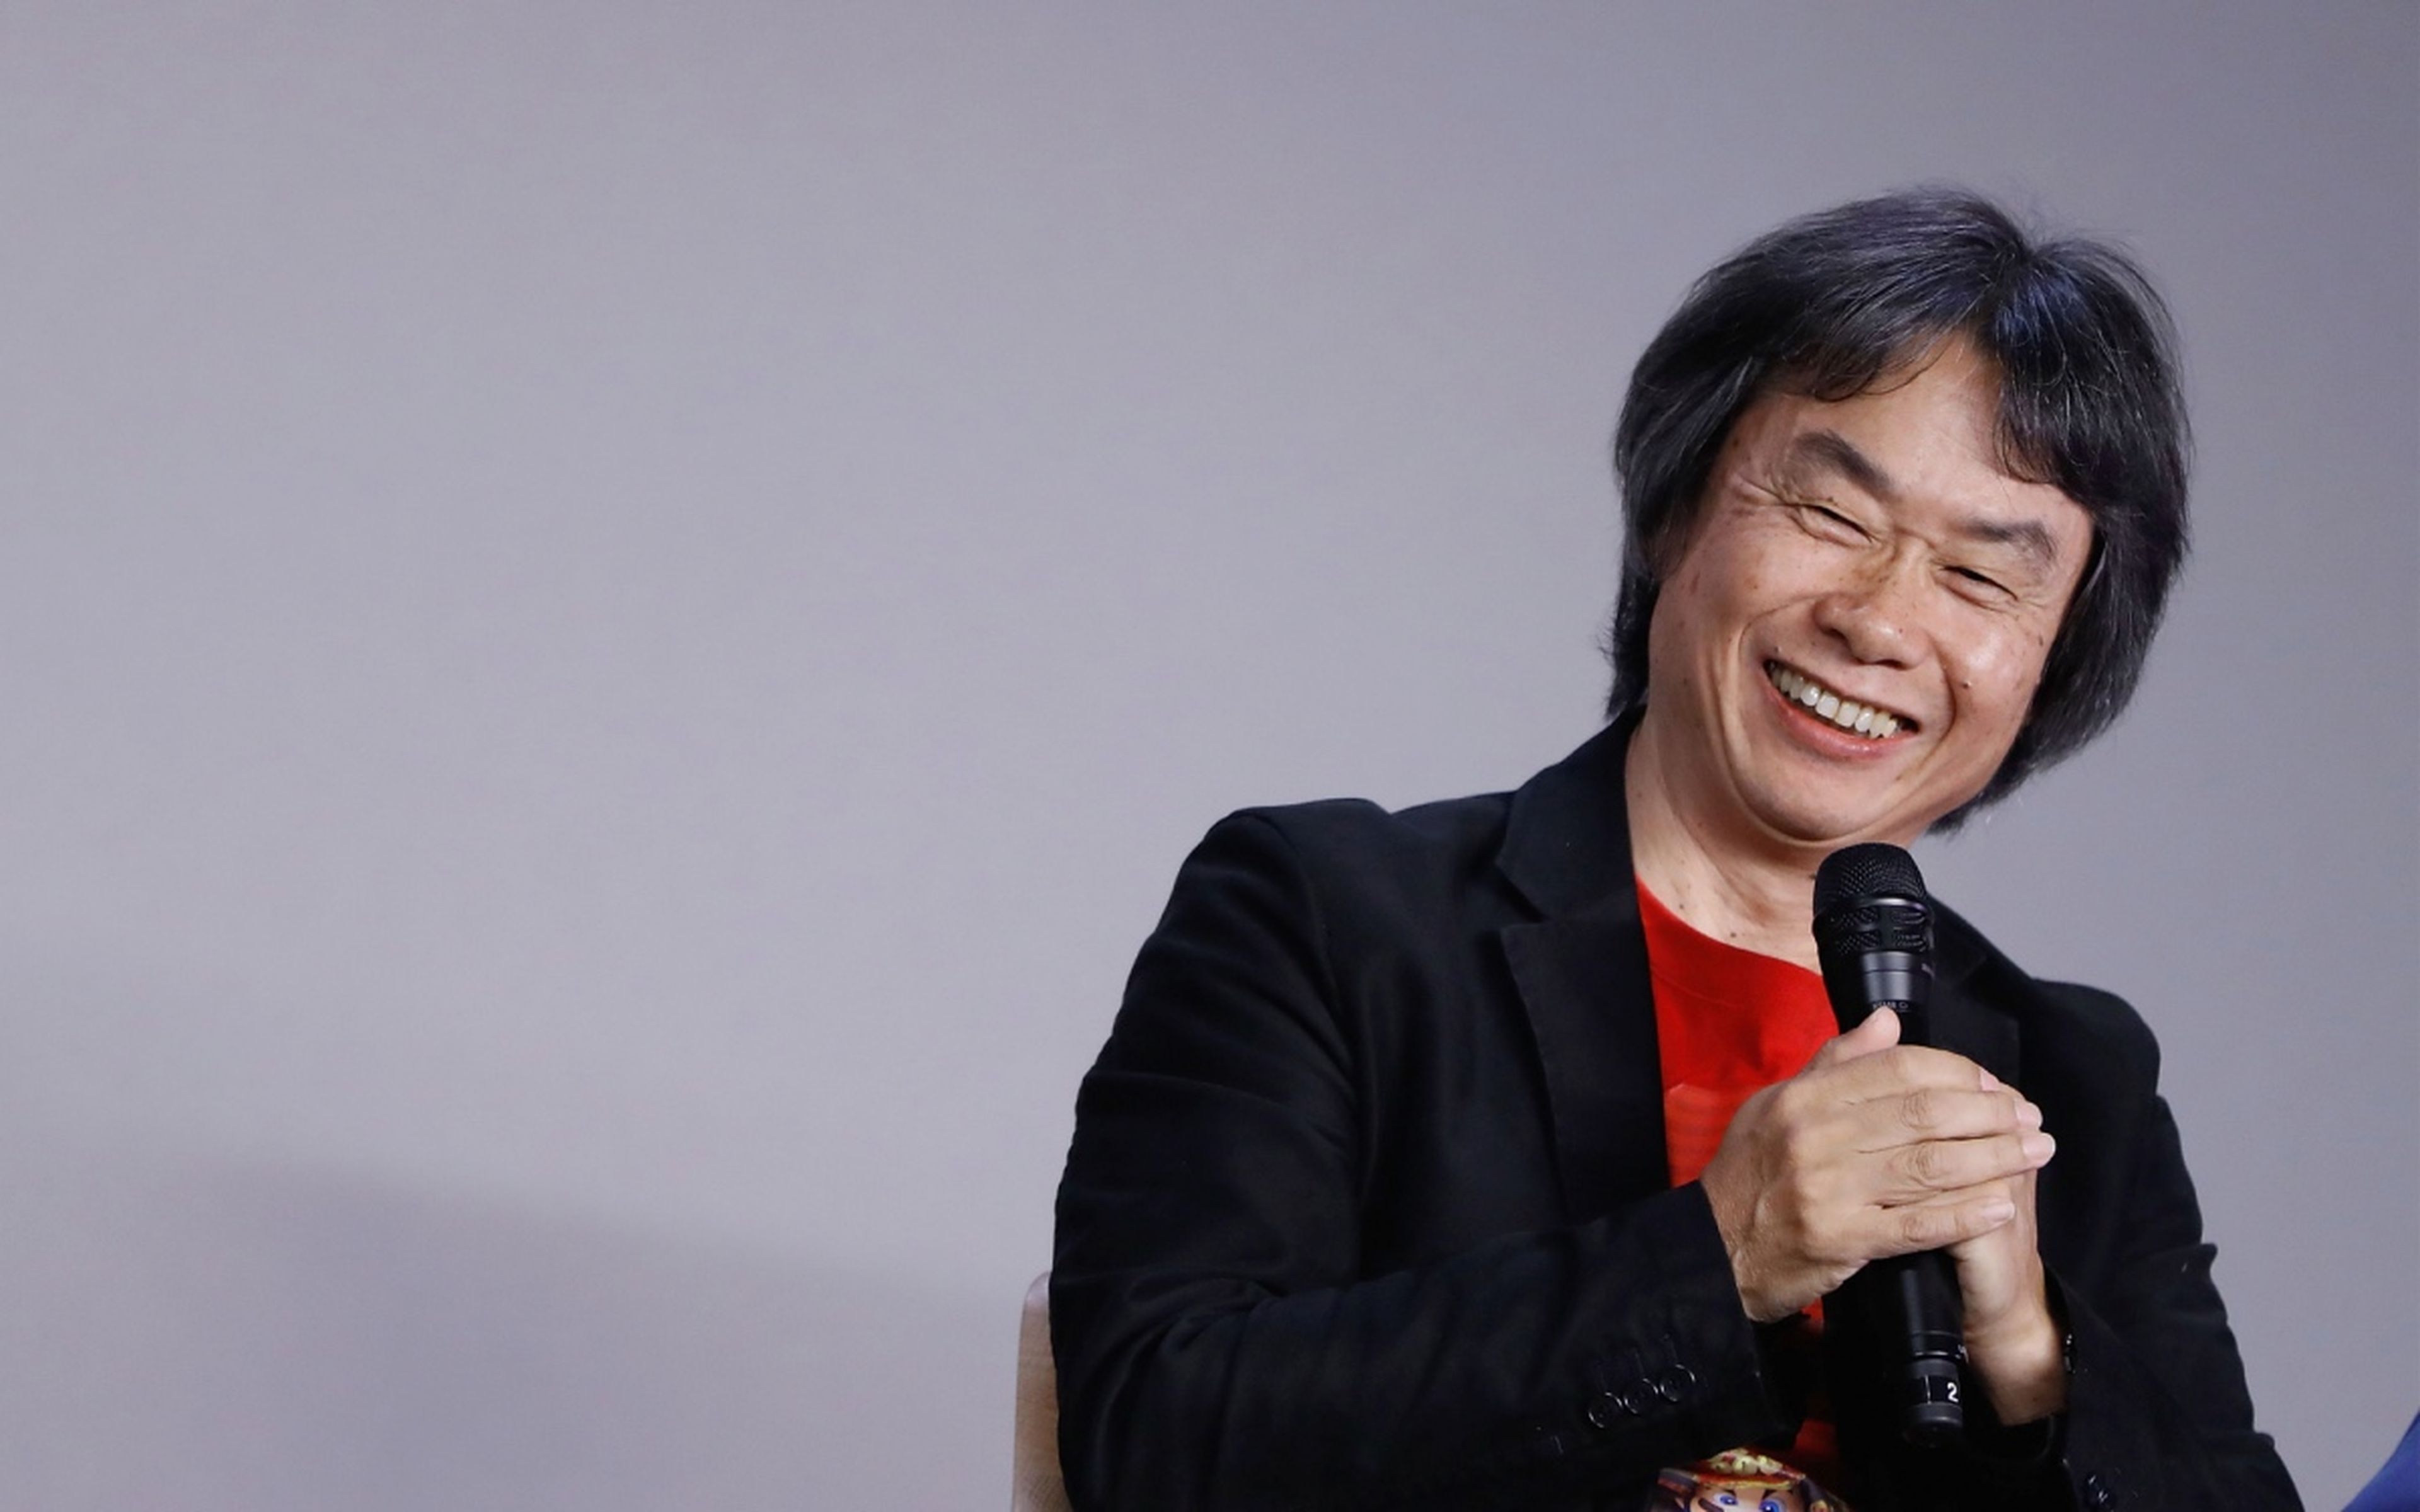 Shigeru Miyamoto recibió el Princesa de Asturias en Comunicación y Humanidades en el año 2012.